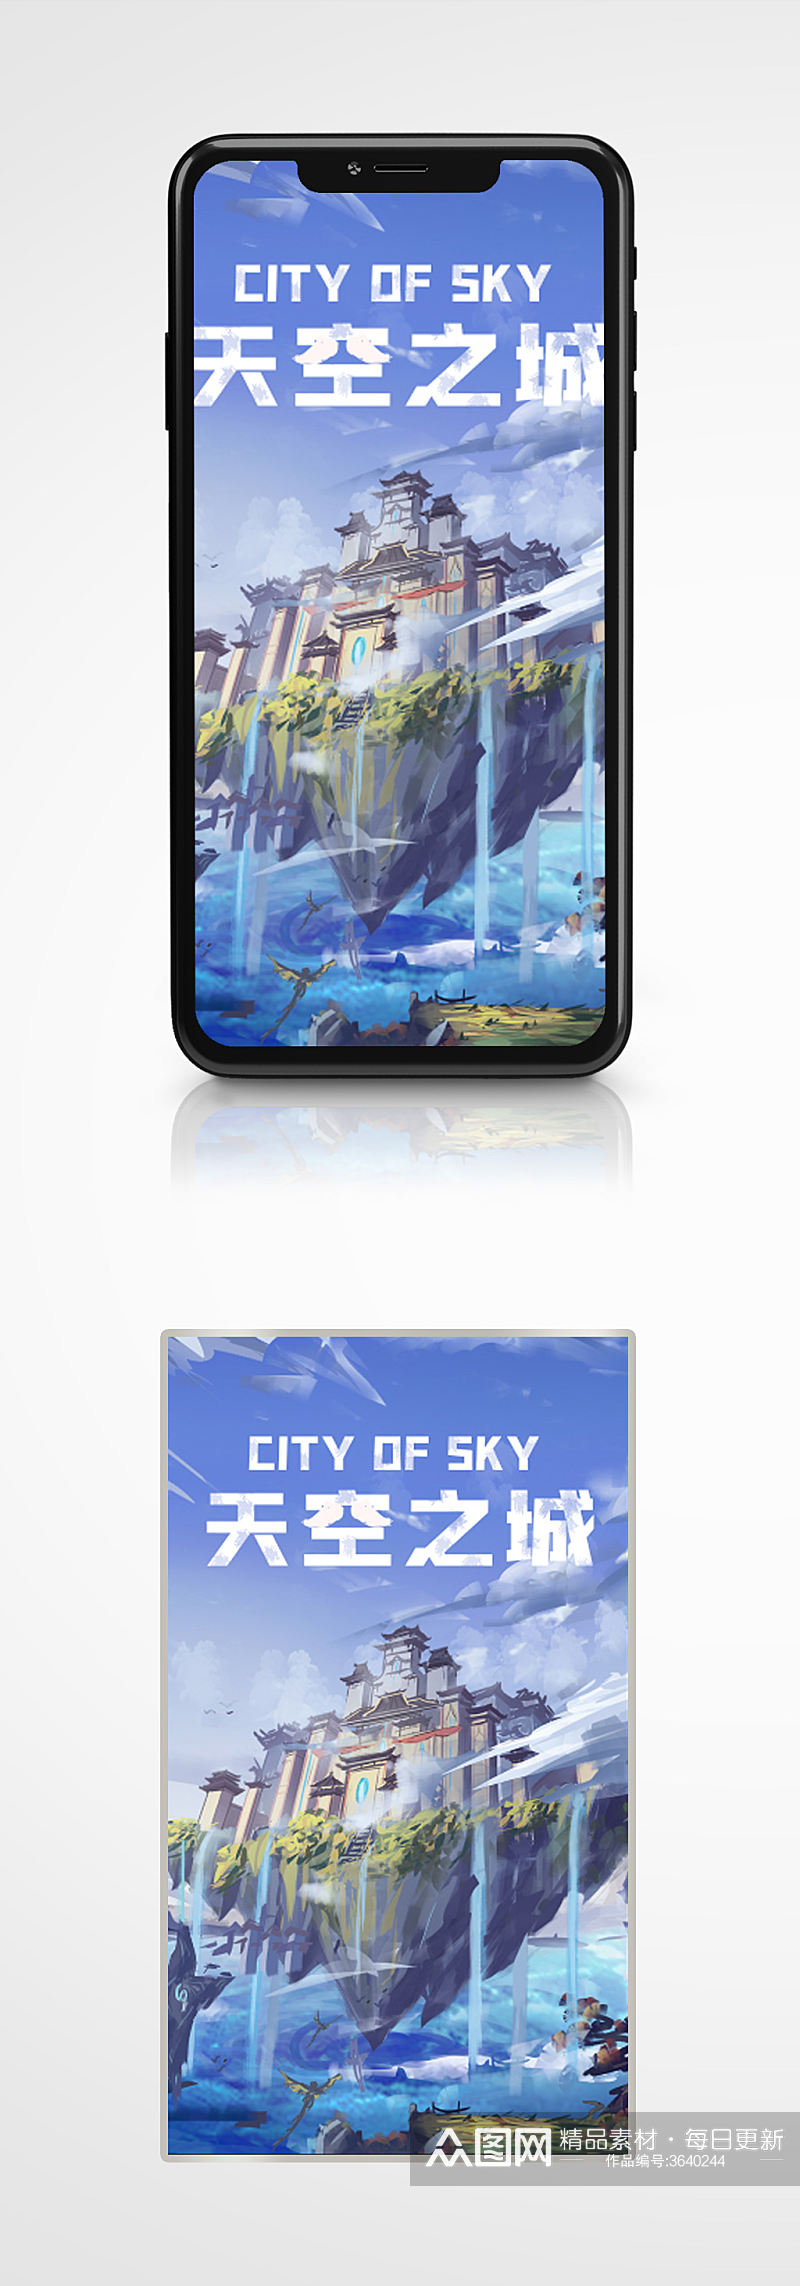 蓝色简约CG天空之城游戏手机海报手绘素材